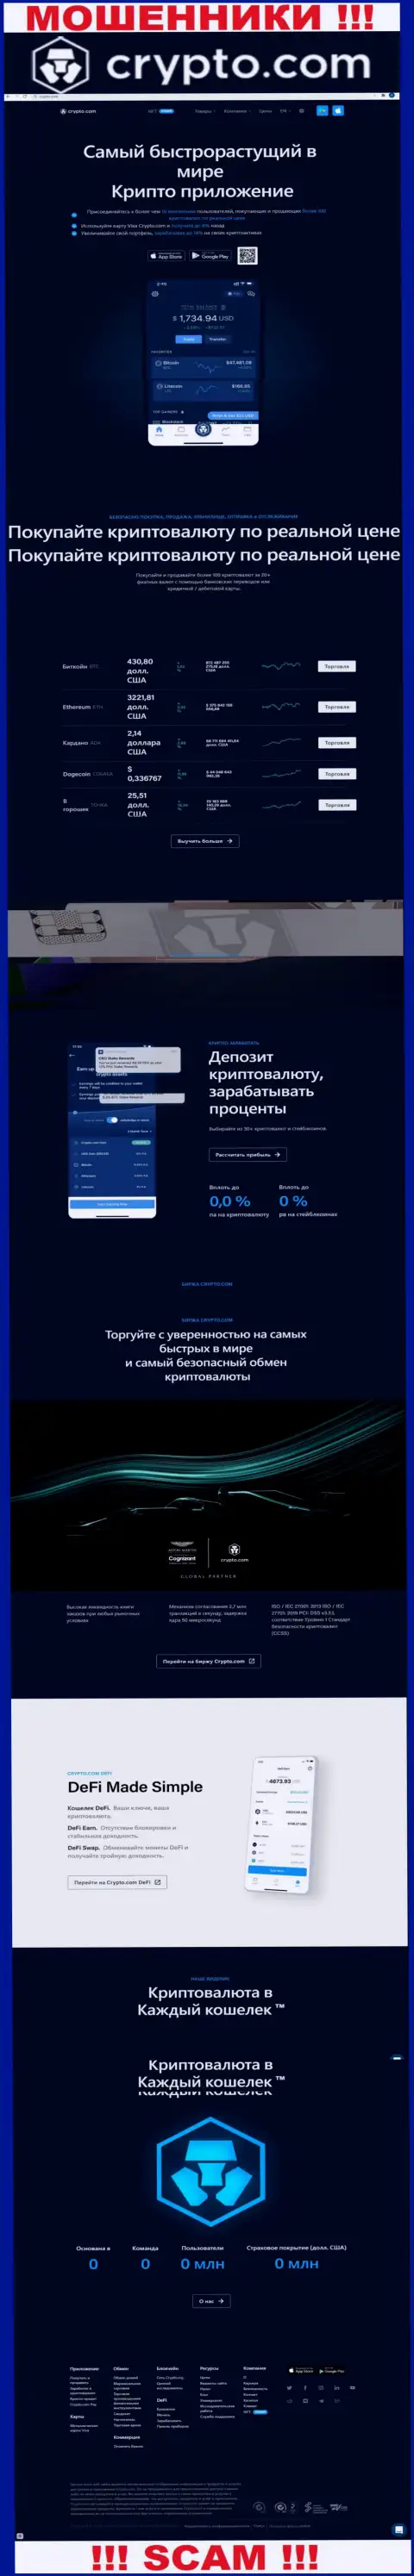 Официальный информационный портал шулеров КриптоКом, заполненный инфой для наивных людей